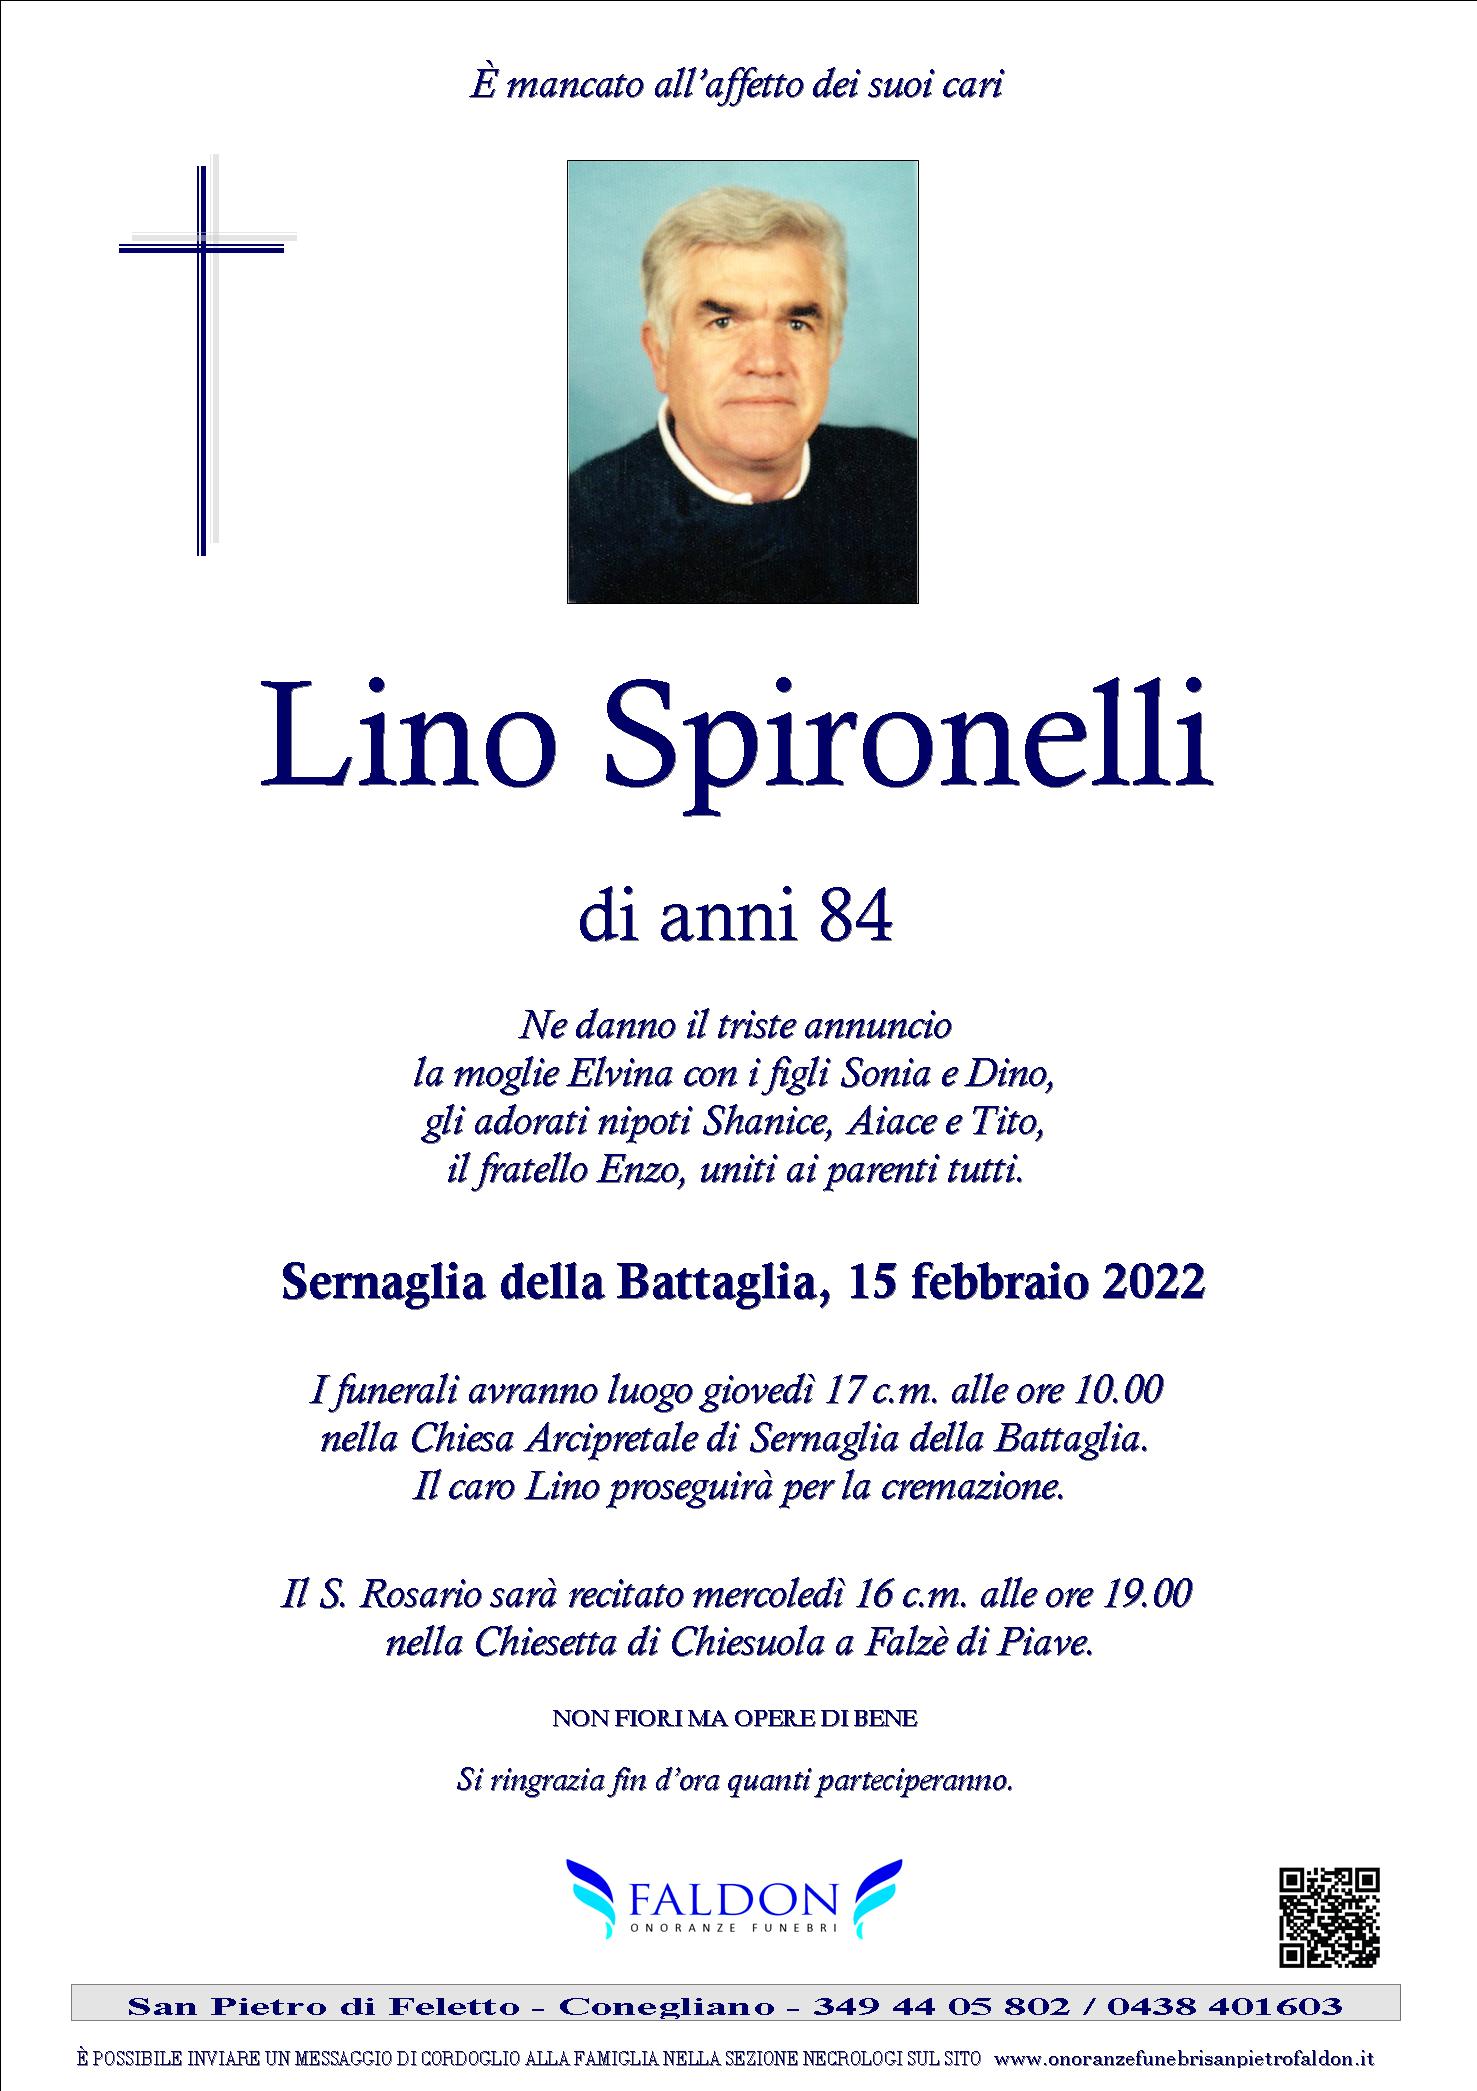 Lino Spironelli